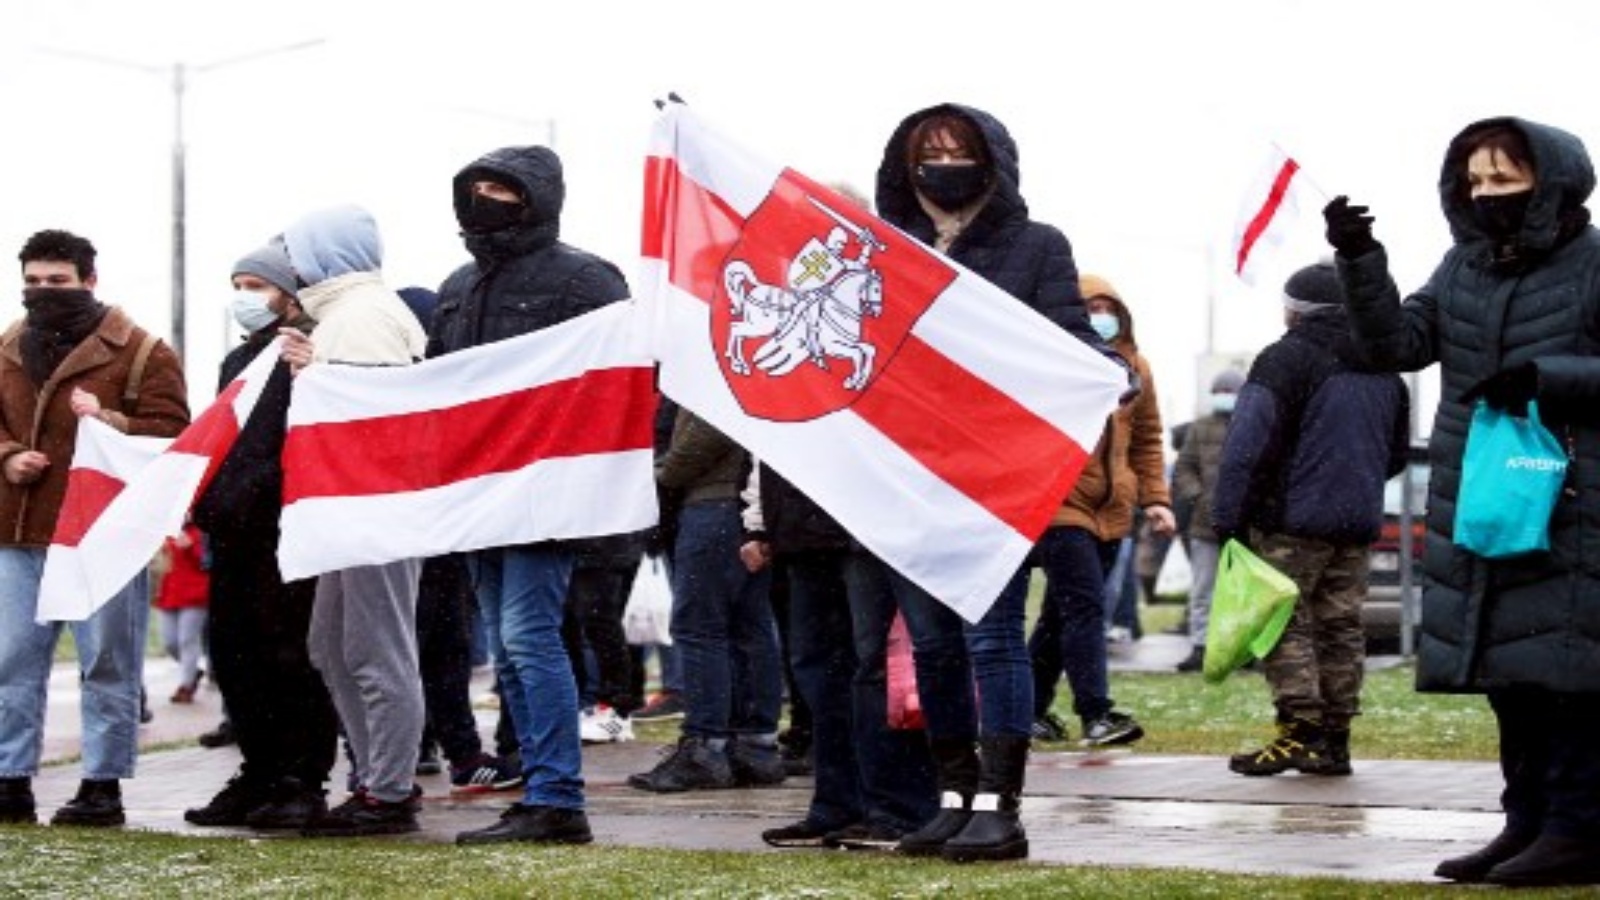 أنصار المعارضة يحملون أعلام بيلاروسيا البيضاء - الحمراء - البيضاء السابقة أثناء تجمعهم للاحتجاج على عنف الشرطة ونتائج الانتخابات الرئاسية البيلاروسية في مينسك ، في 29 نوفمبر 2020